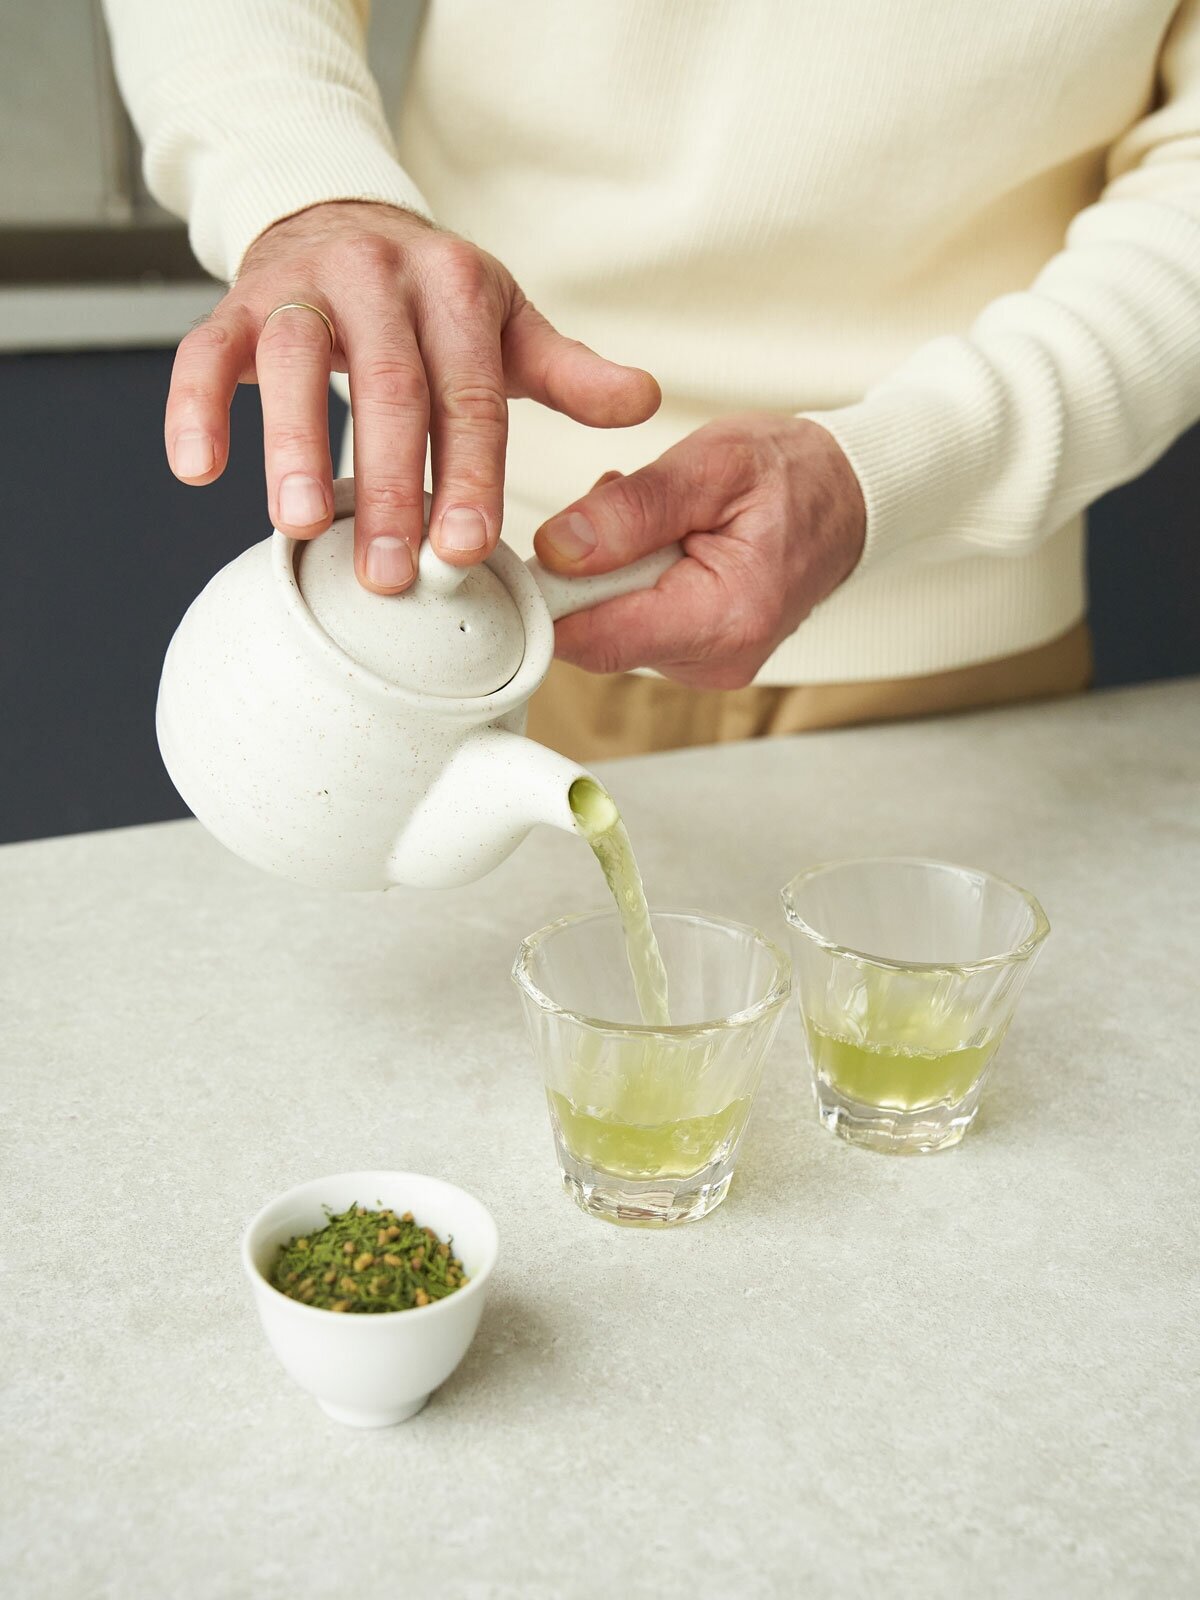 Японский зелёный чай генмайча, ORIGAMI TEA, 50 г зеленый чай сенча с добавлением матча, чай зеленый рассыпной, чай матча, маття чай, чай зеленый листовой. зелёный с матча.